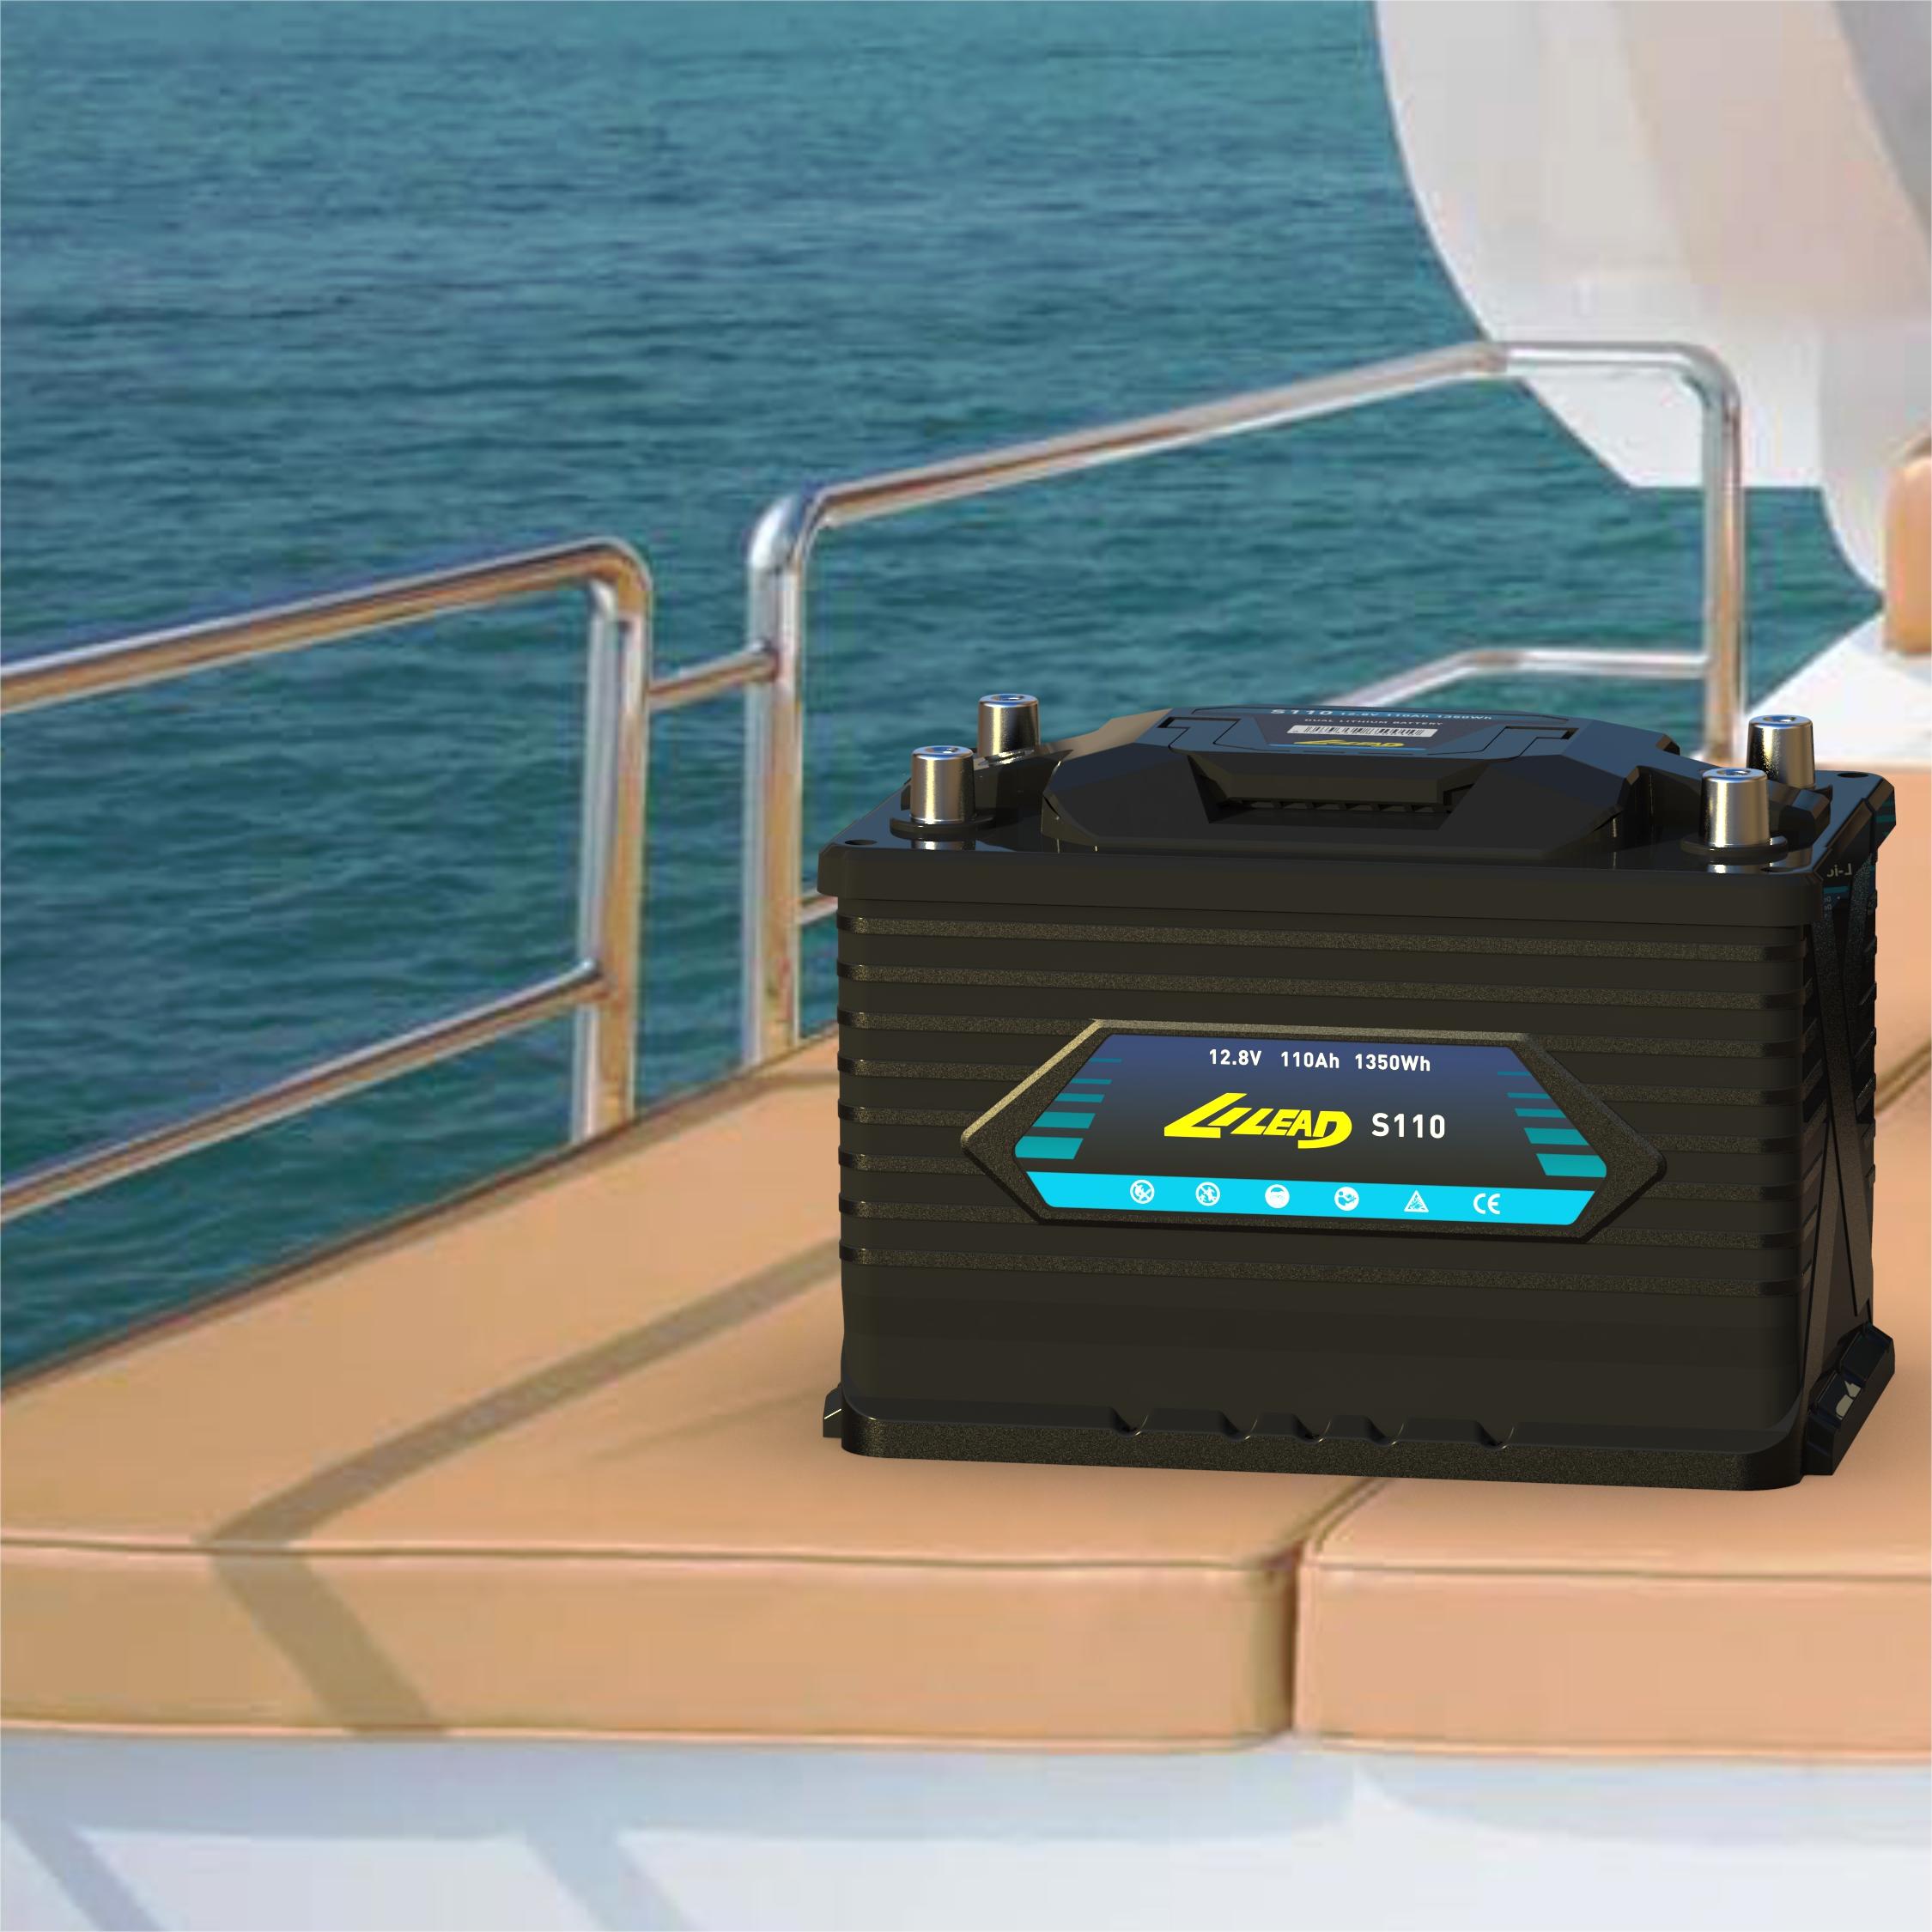 启动&服务船用锂电池 LILEAD S110